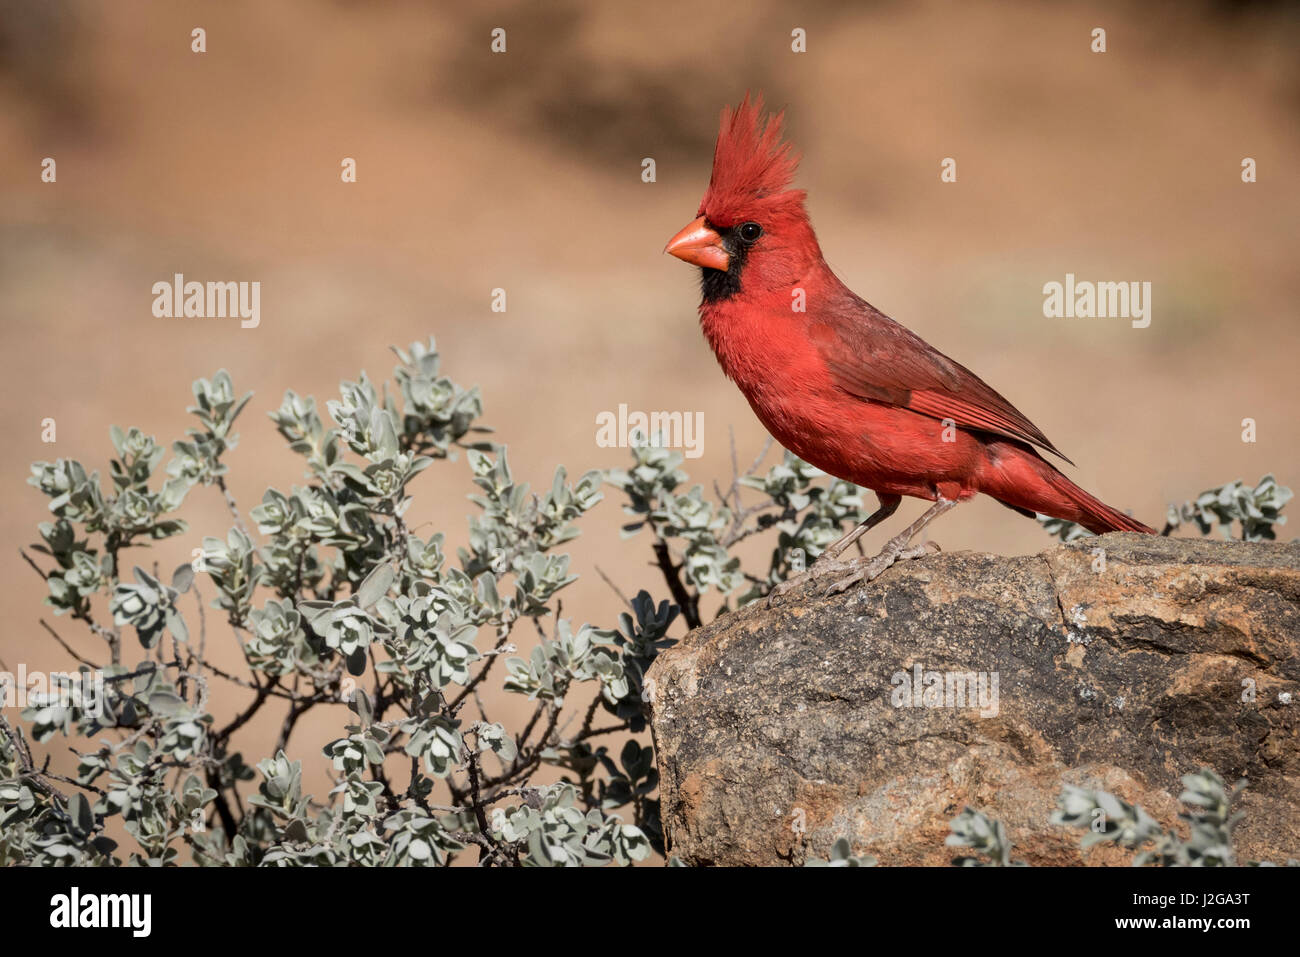 USA, Arizona, Amado. Male northern cardinal on rock. Credit as: Wendy Kaveney / Jaynes Gallery / DanitaDelimont.com Stock Photo